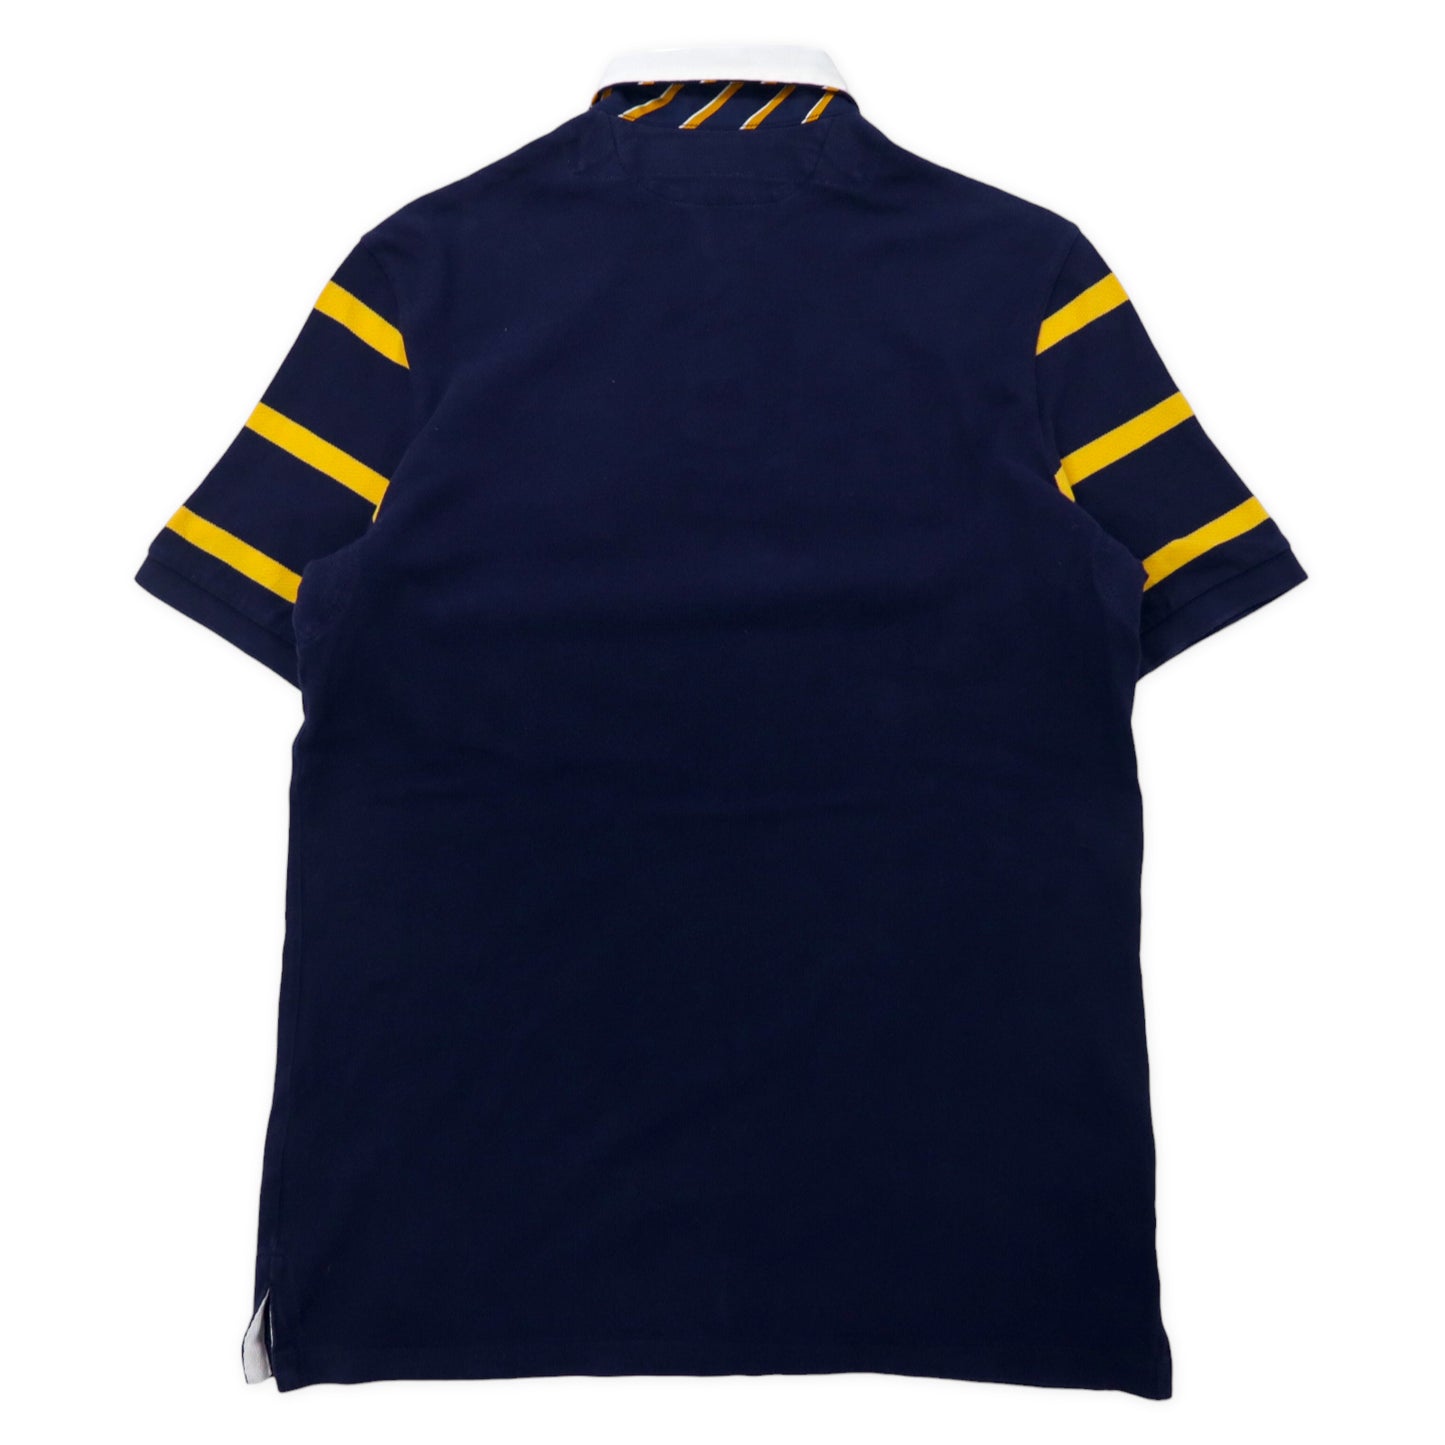 POLO RALPH LAUREN ポロシャツ S ネイビー コットン P.R.L.F.C. 1939-40 ナンバリング CLASSIC FIT